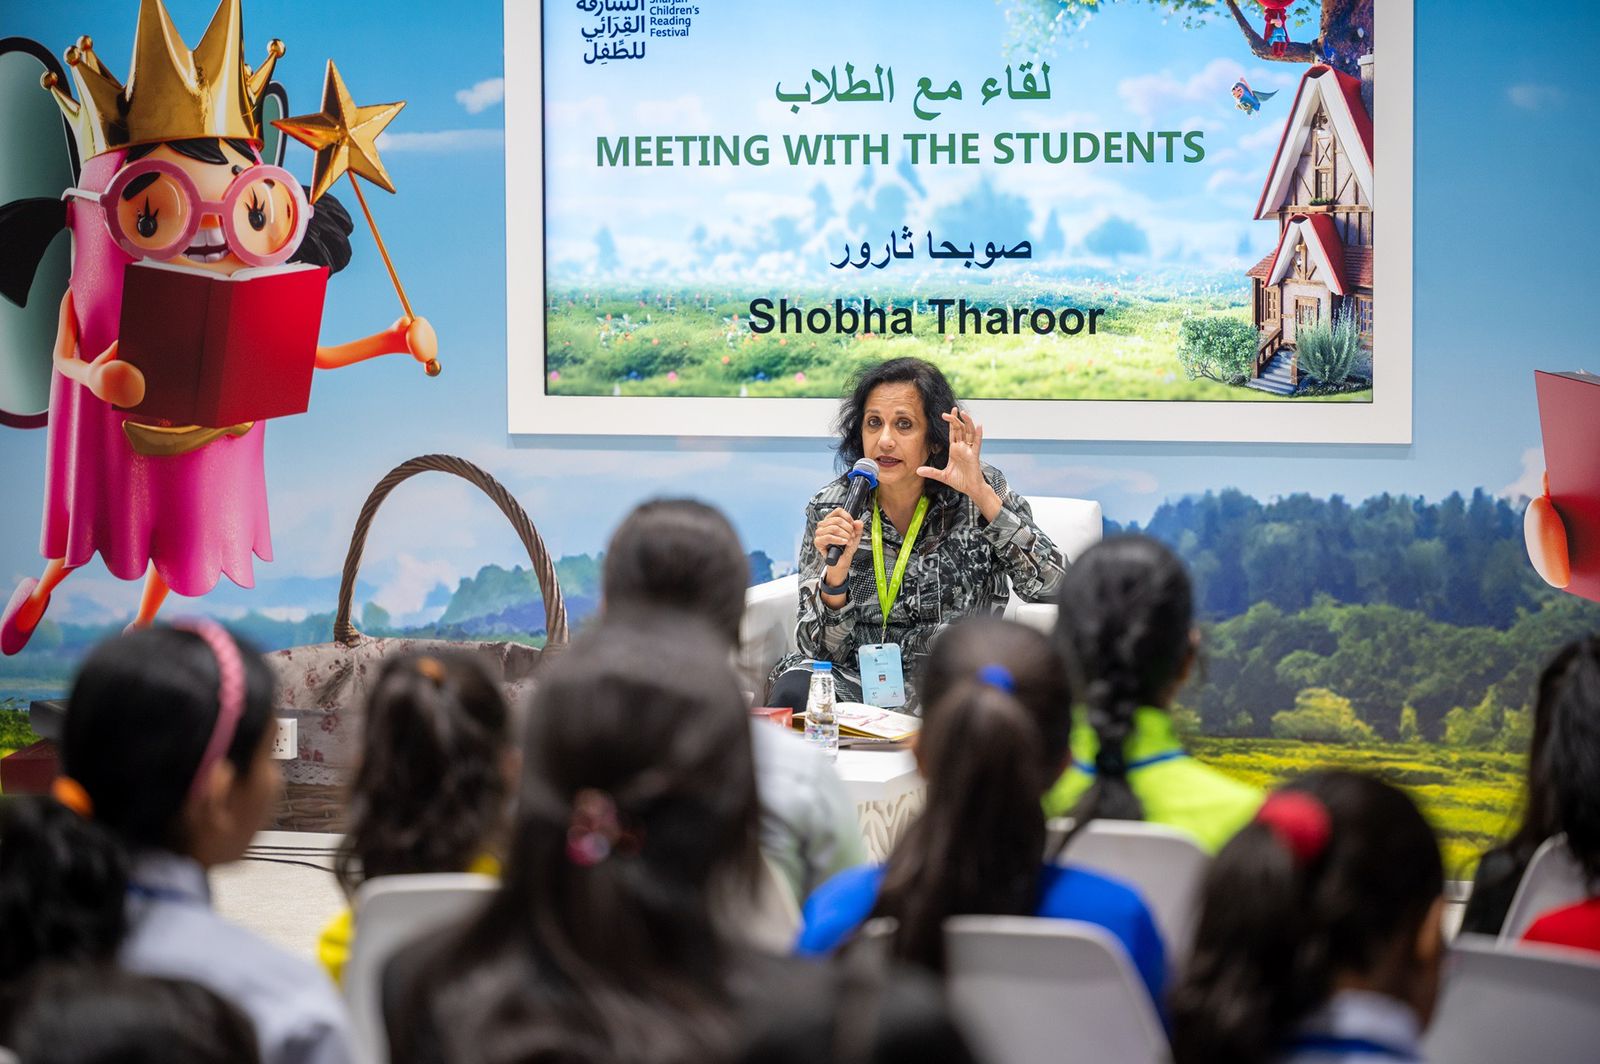 الكاتبة صوبحا ثارور تُلهم طلبة المدارس وتتحدّث عن الإبداع في أدب الأطفال